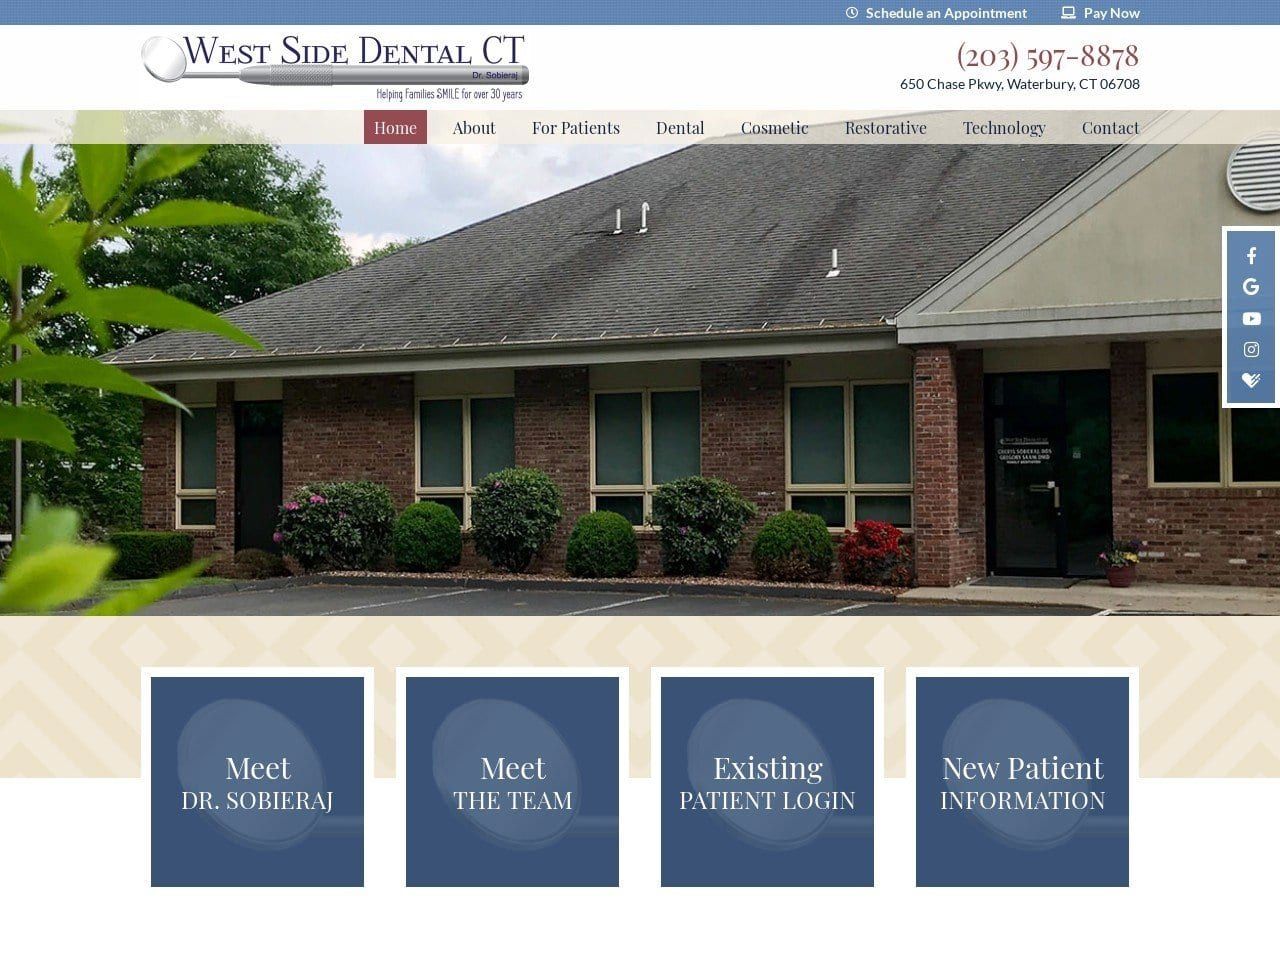 West Side Dental CT Website Screenshot from westsidedentalct.com